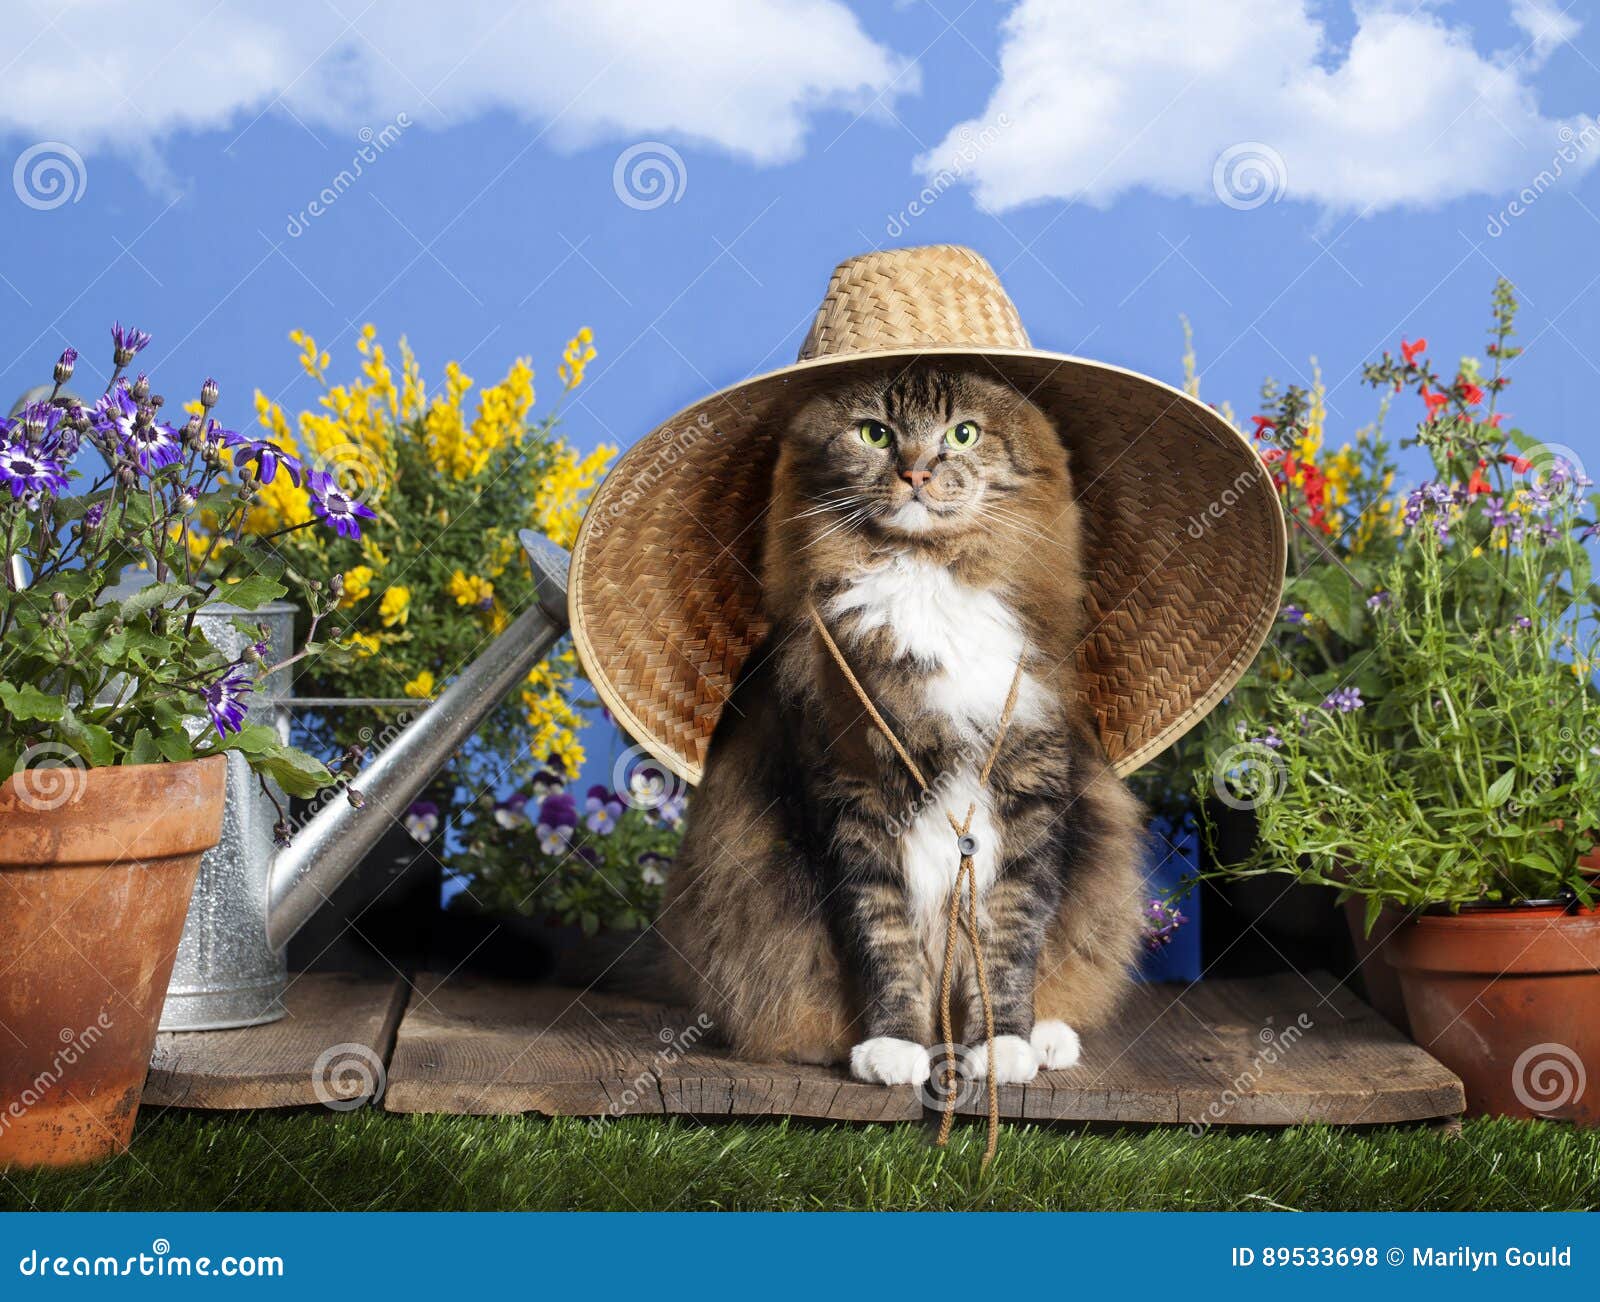 cat wearing gardening hat